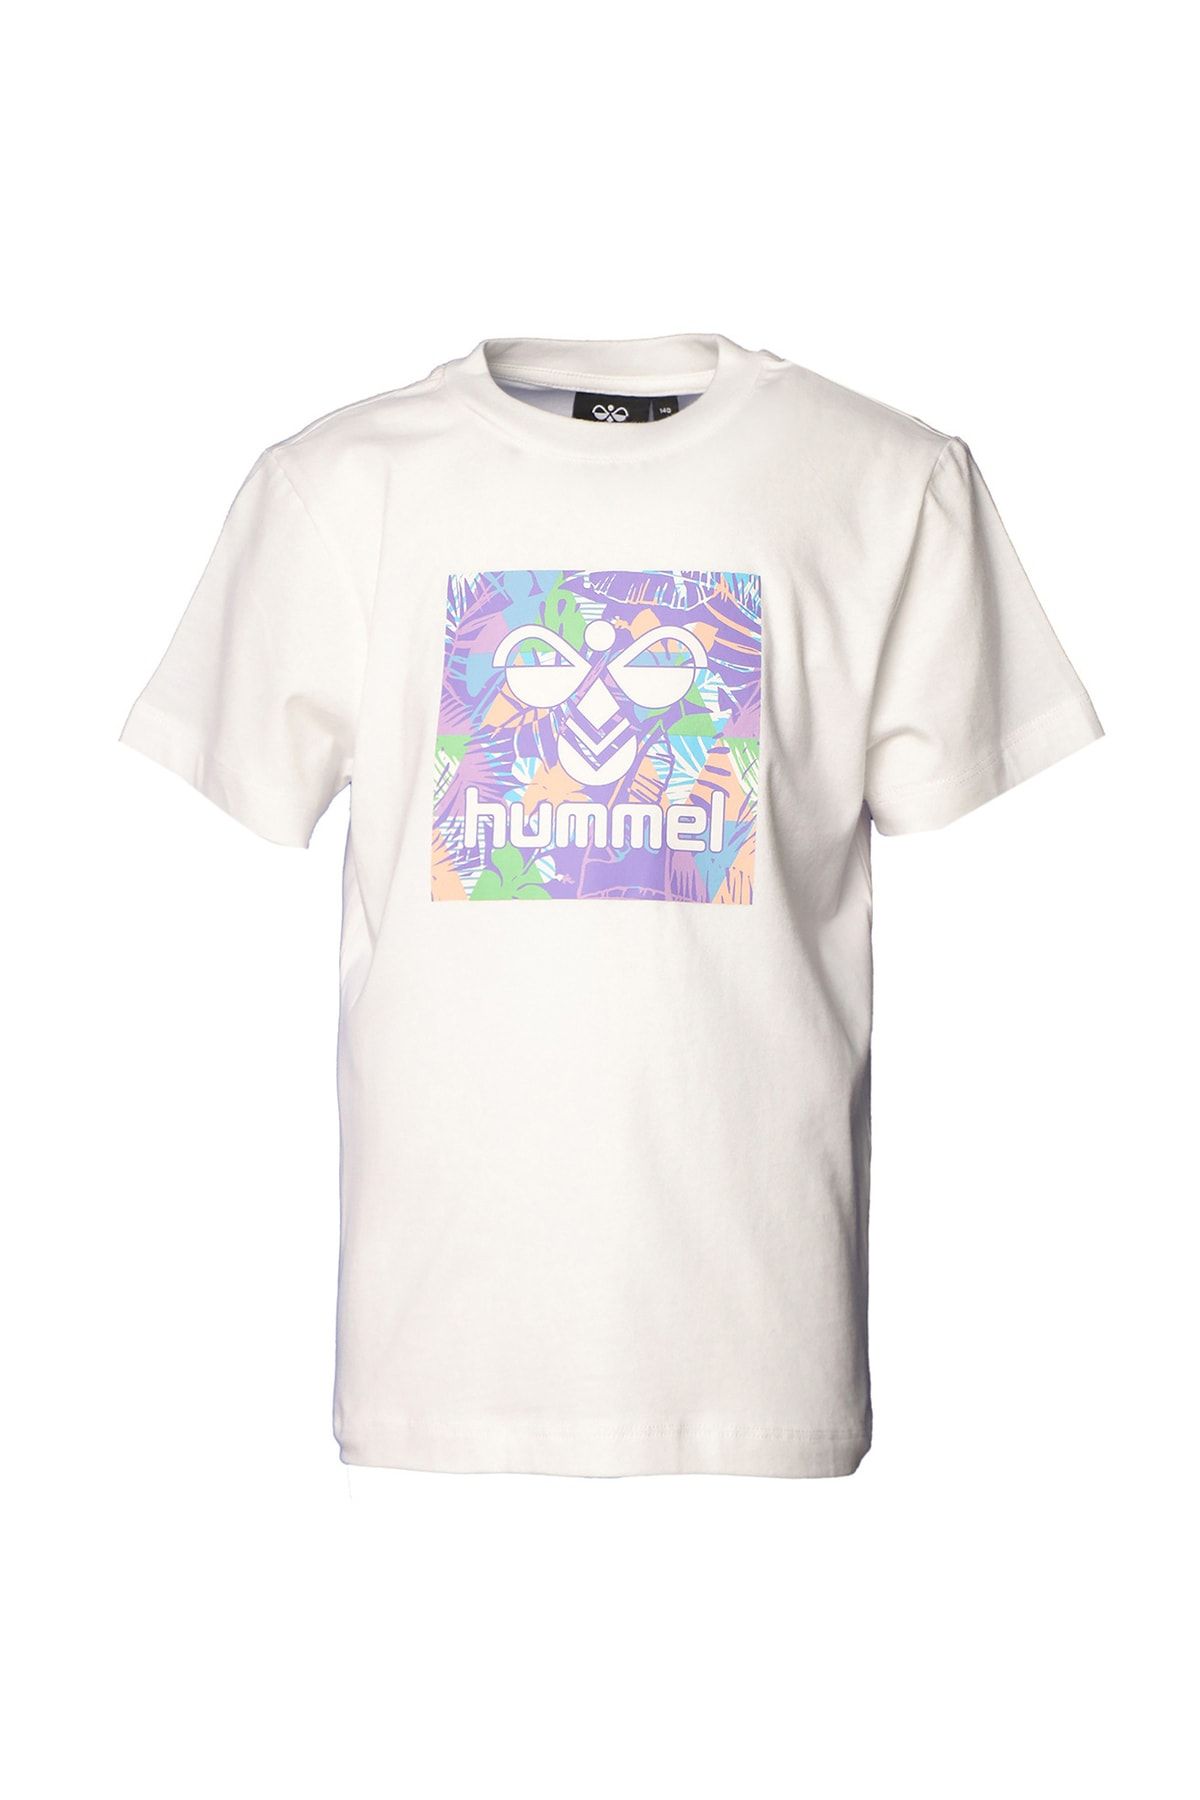 hummel Baskılı Kırık Beyaz Kız Çocuk T-shirt 911634-9003 T-S/s